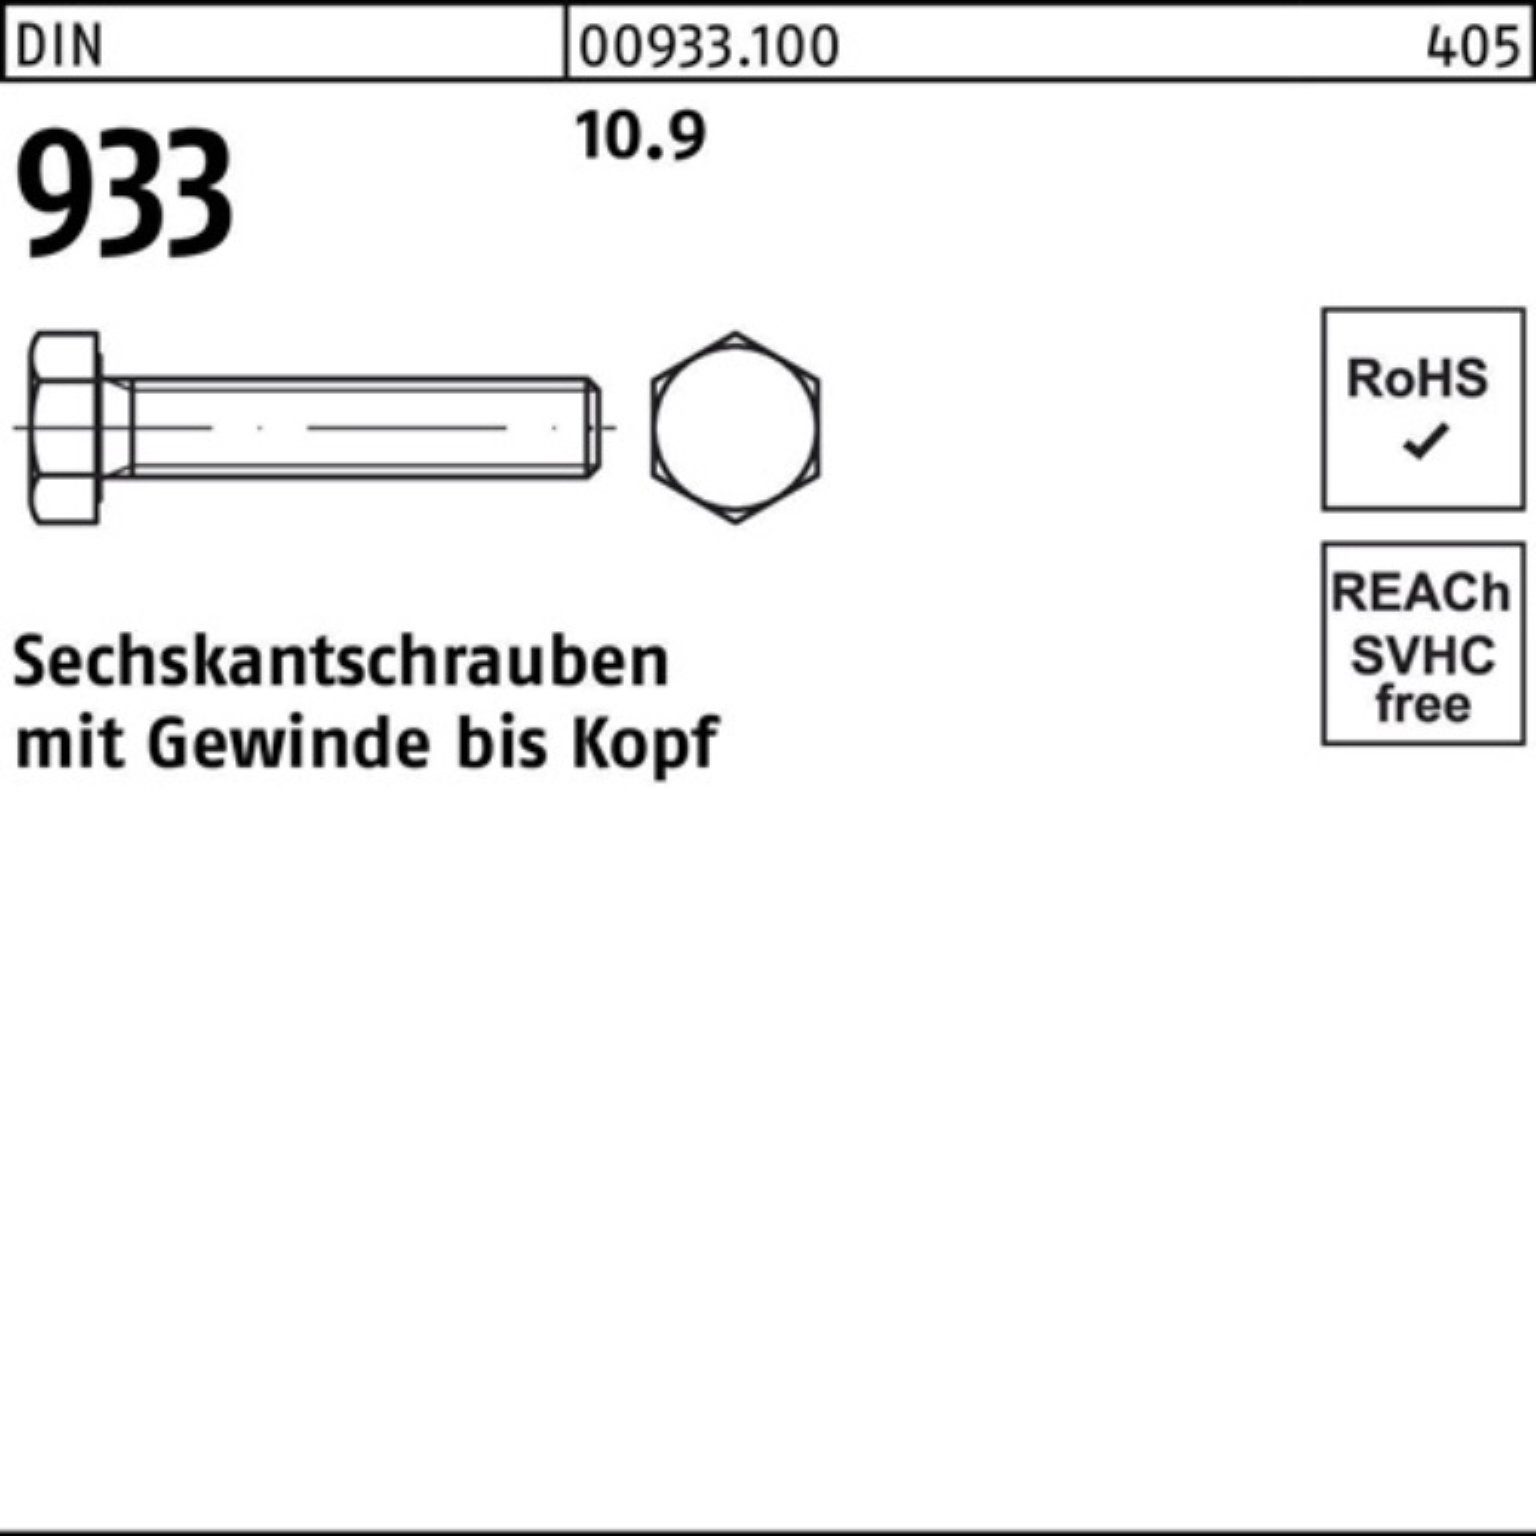 Sechskantschraube VG 1 Reyher DIN 933 100er 933 10.9 Pack M16x Sechskantschraube DIN Stück 300